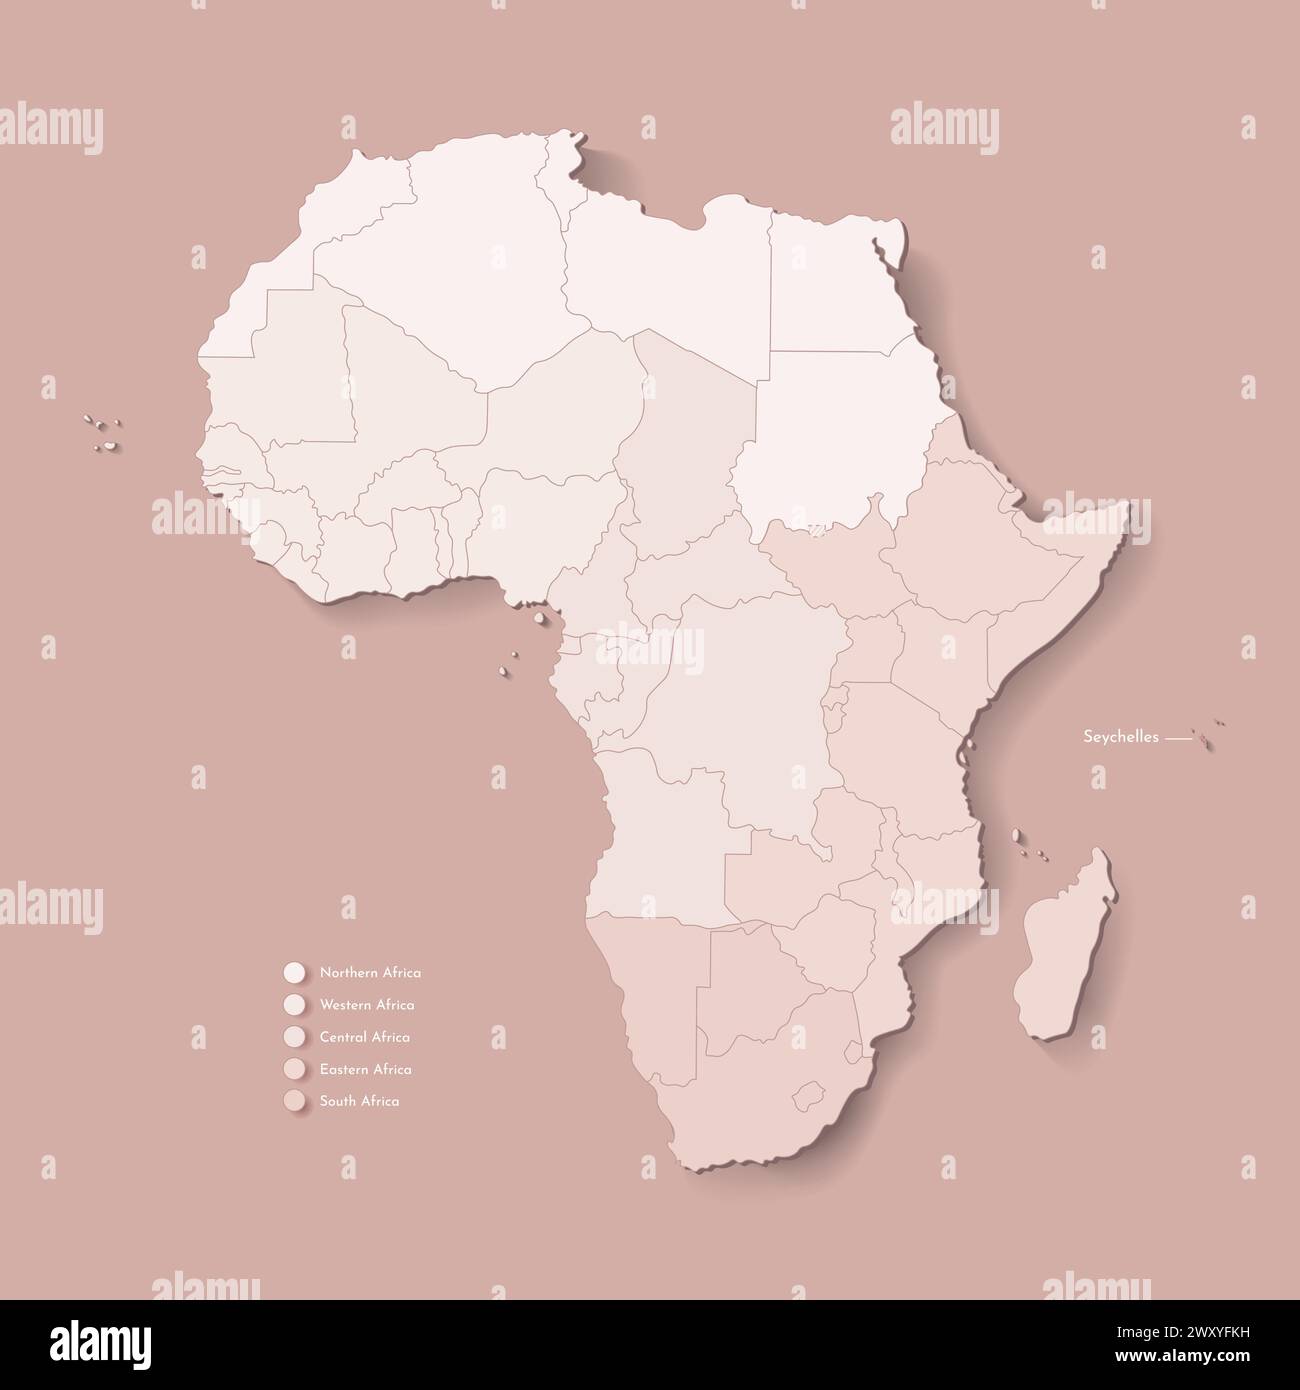 Vektor-Illustration mit afrikanischem Kontinent mit Grenzen aller staaten und markiertem Land Seychellen. Politische Karte in braunen Farben mit westlicher, südlicher Stock Vektor